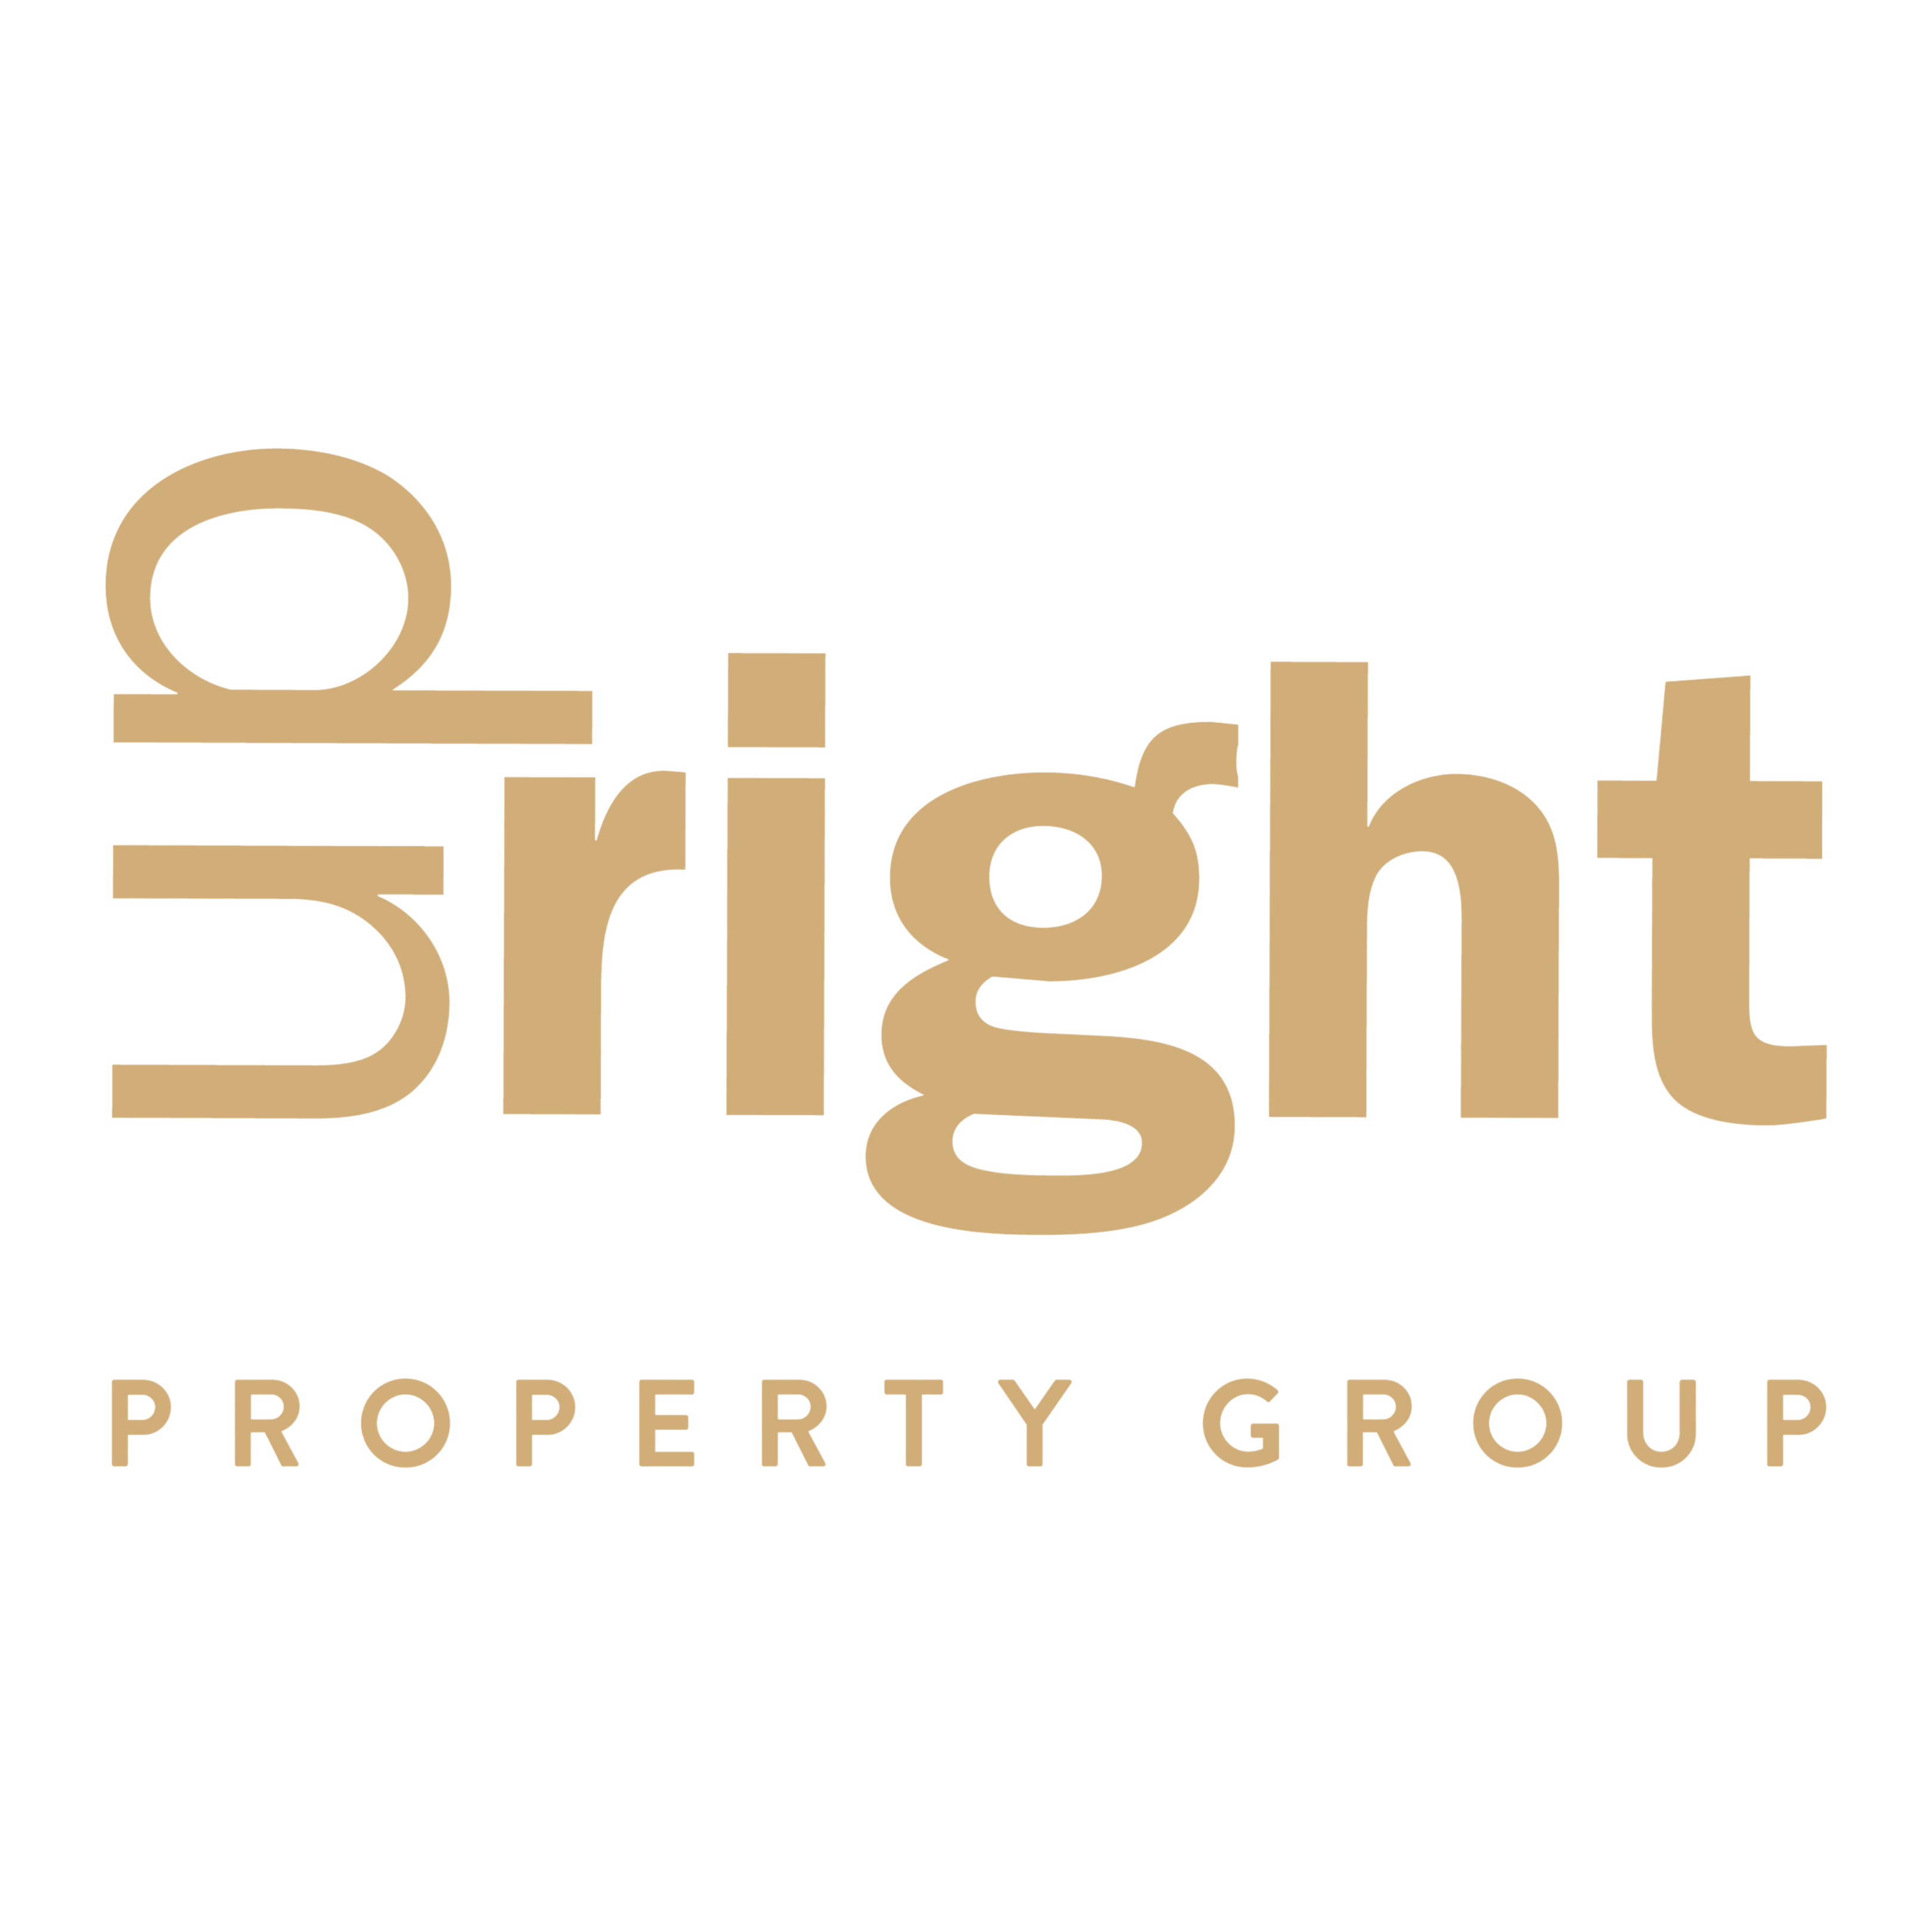 Upright property group Ltd